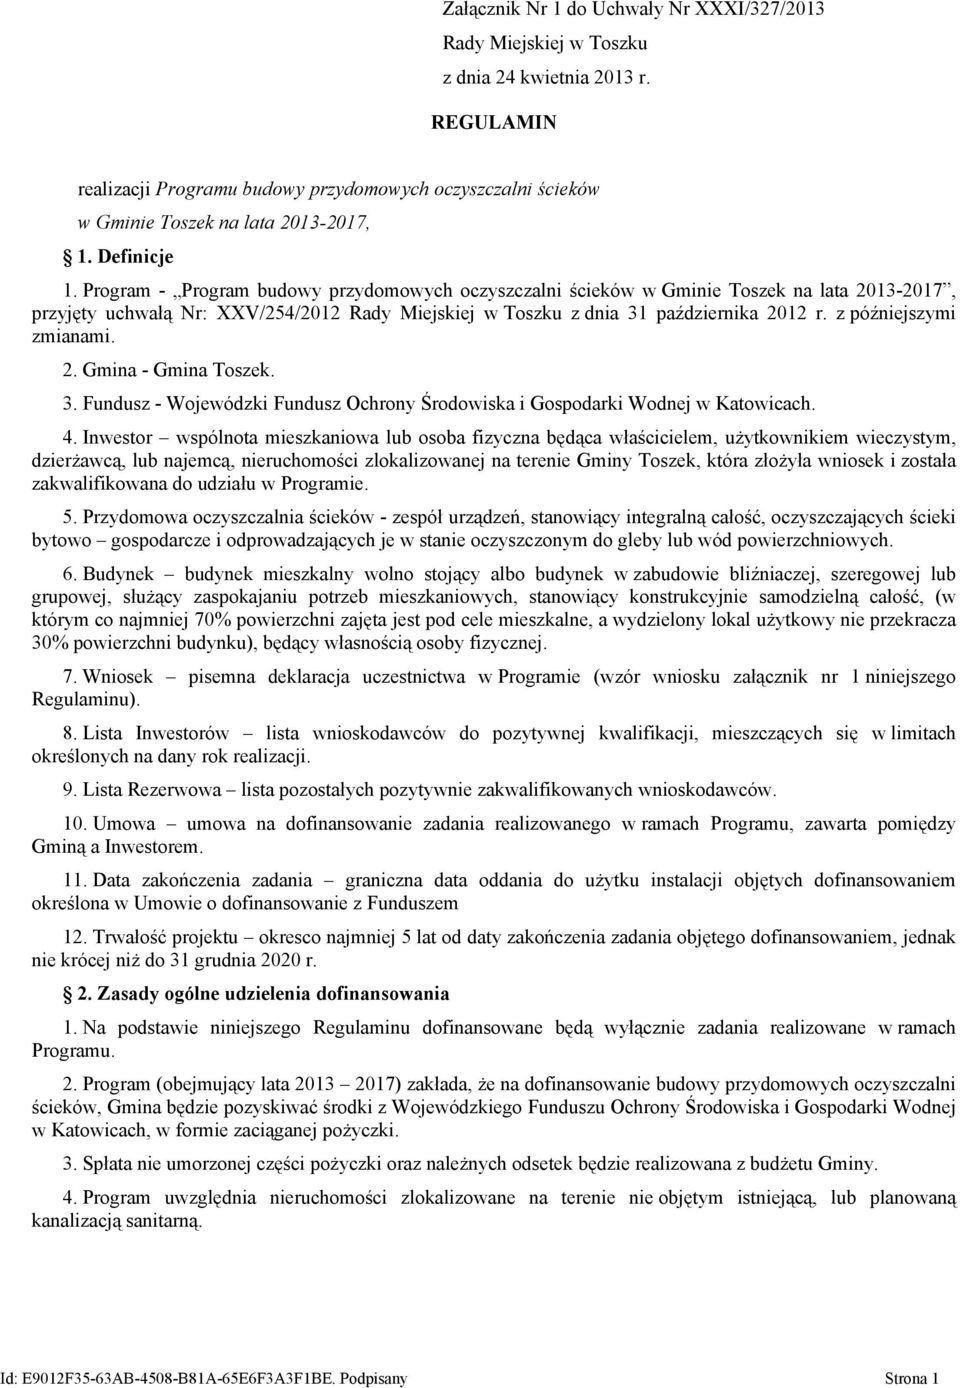 Program - Program budowy przydomowych oczyszczalni ścieków w Gminie Toszek na lata 2013-2017, przyjęty uchwałą Nr: XXV/254/2012 Rady Miejskiej w Toszku z dnia 31 października 2012 r.